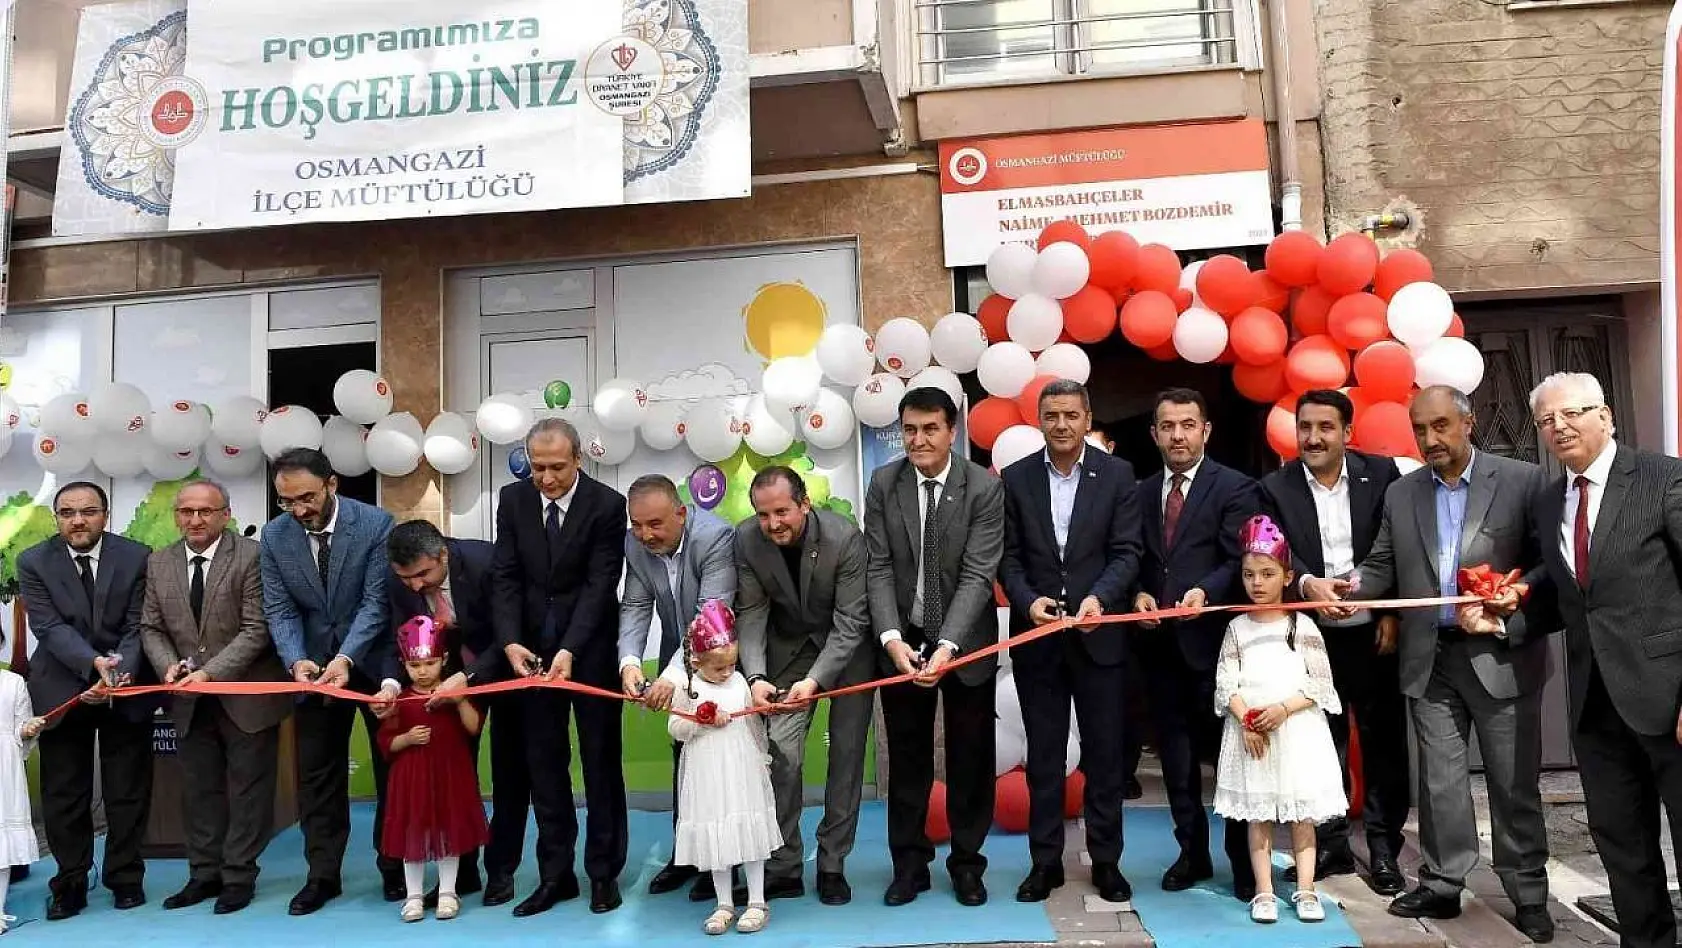 Elmasbahçeler Naime-Mehmet Bozdemir Kur'an Kursu açıldı